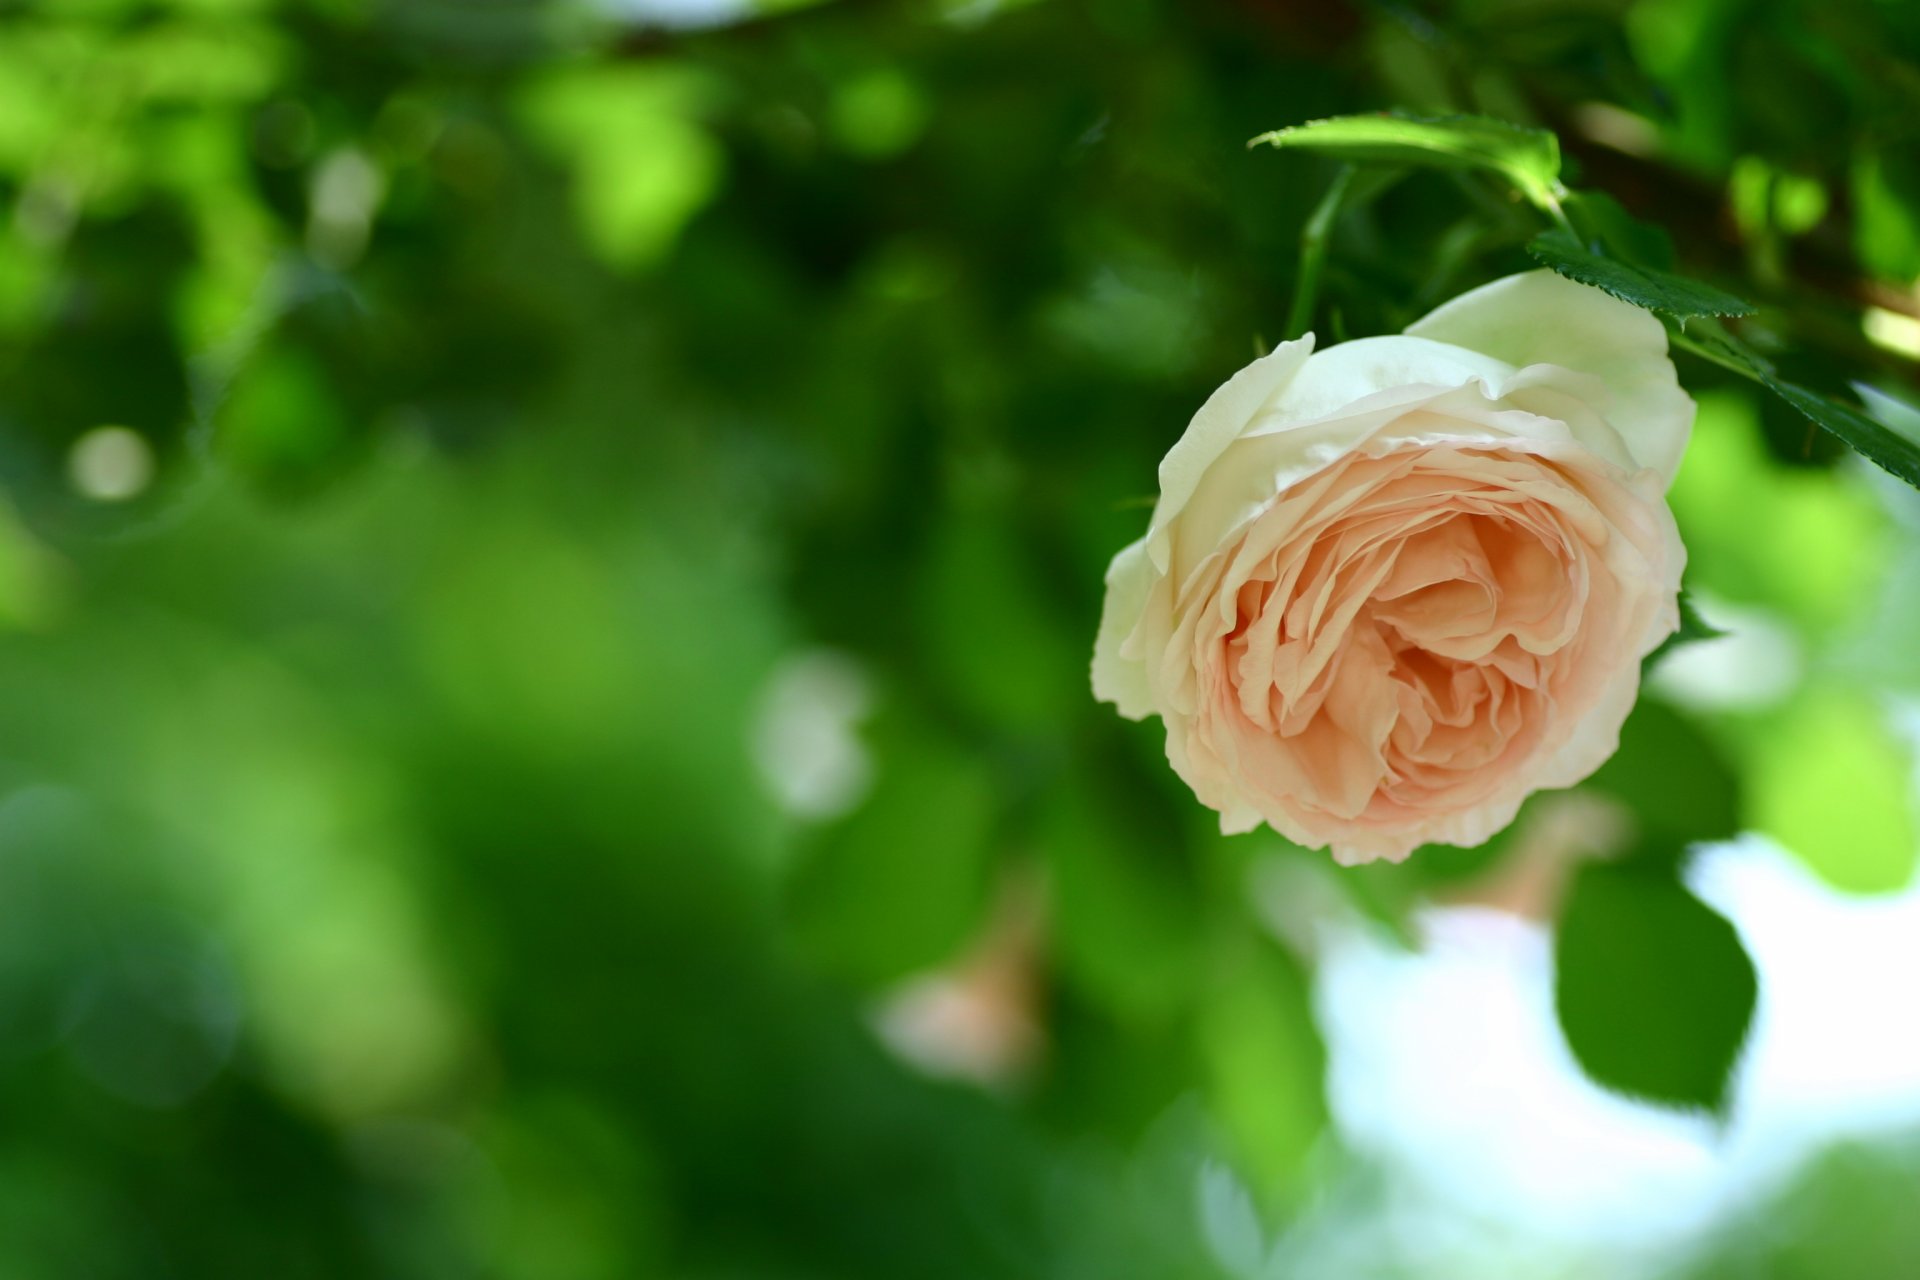 róża brzoskwinia kwiat pączek płatki kwiat łodyga liście liście zielony zieleń rozmycie natura